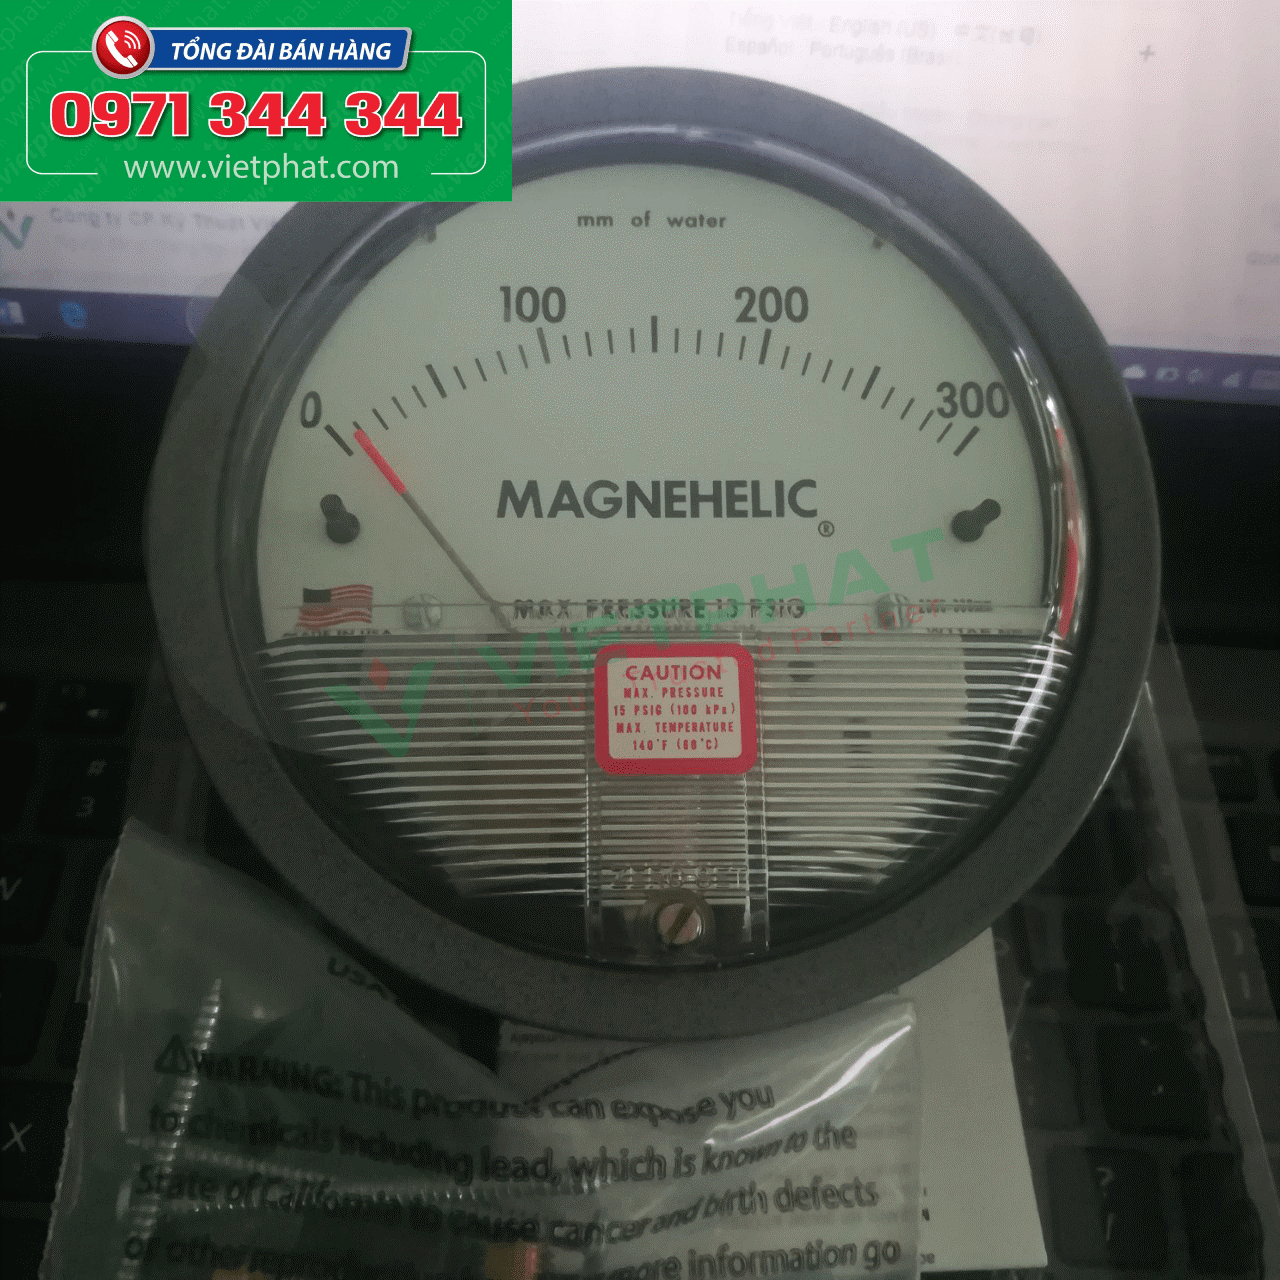 Đồng hồ đo chênh áp 0-300 mm of water